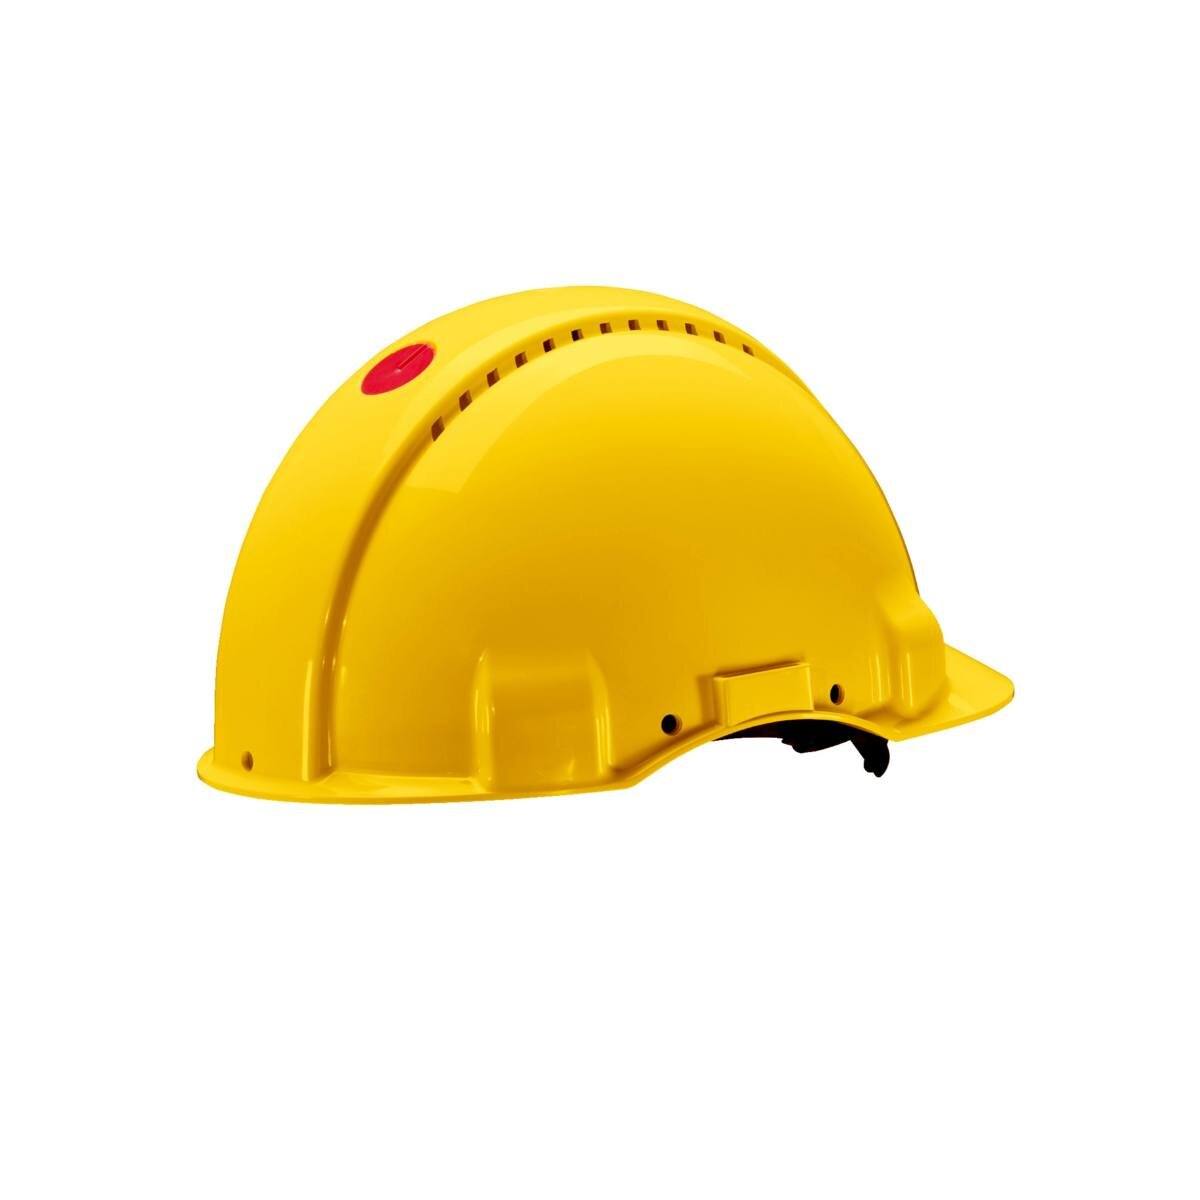 elmetto di sicurezza 3M G3000 G30DUY di colore giallo, ventilato, con uvicatore, pinlock e fascia antisudore in pelle